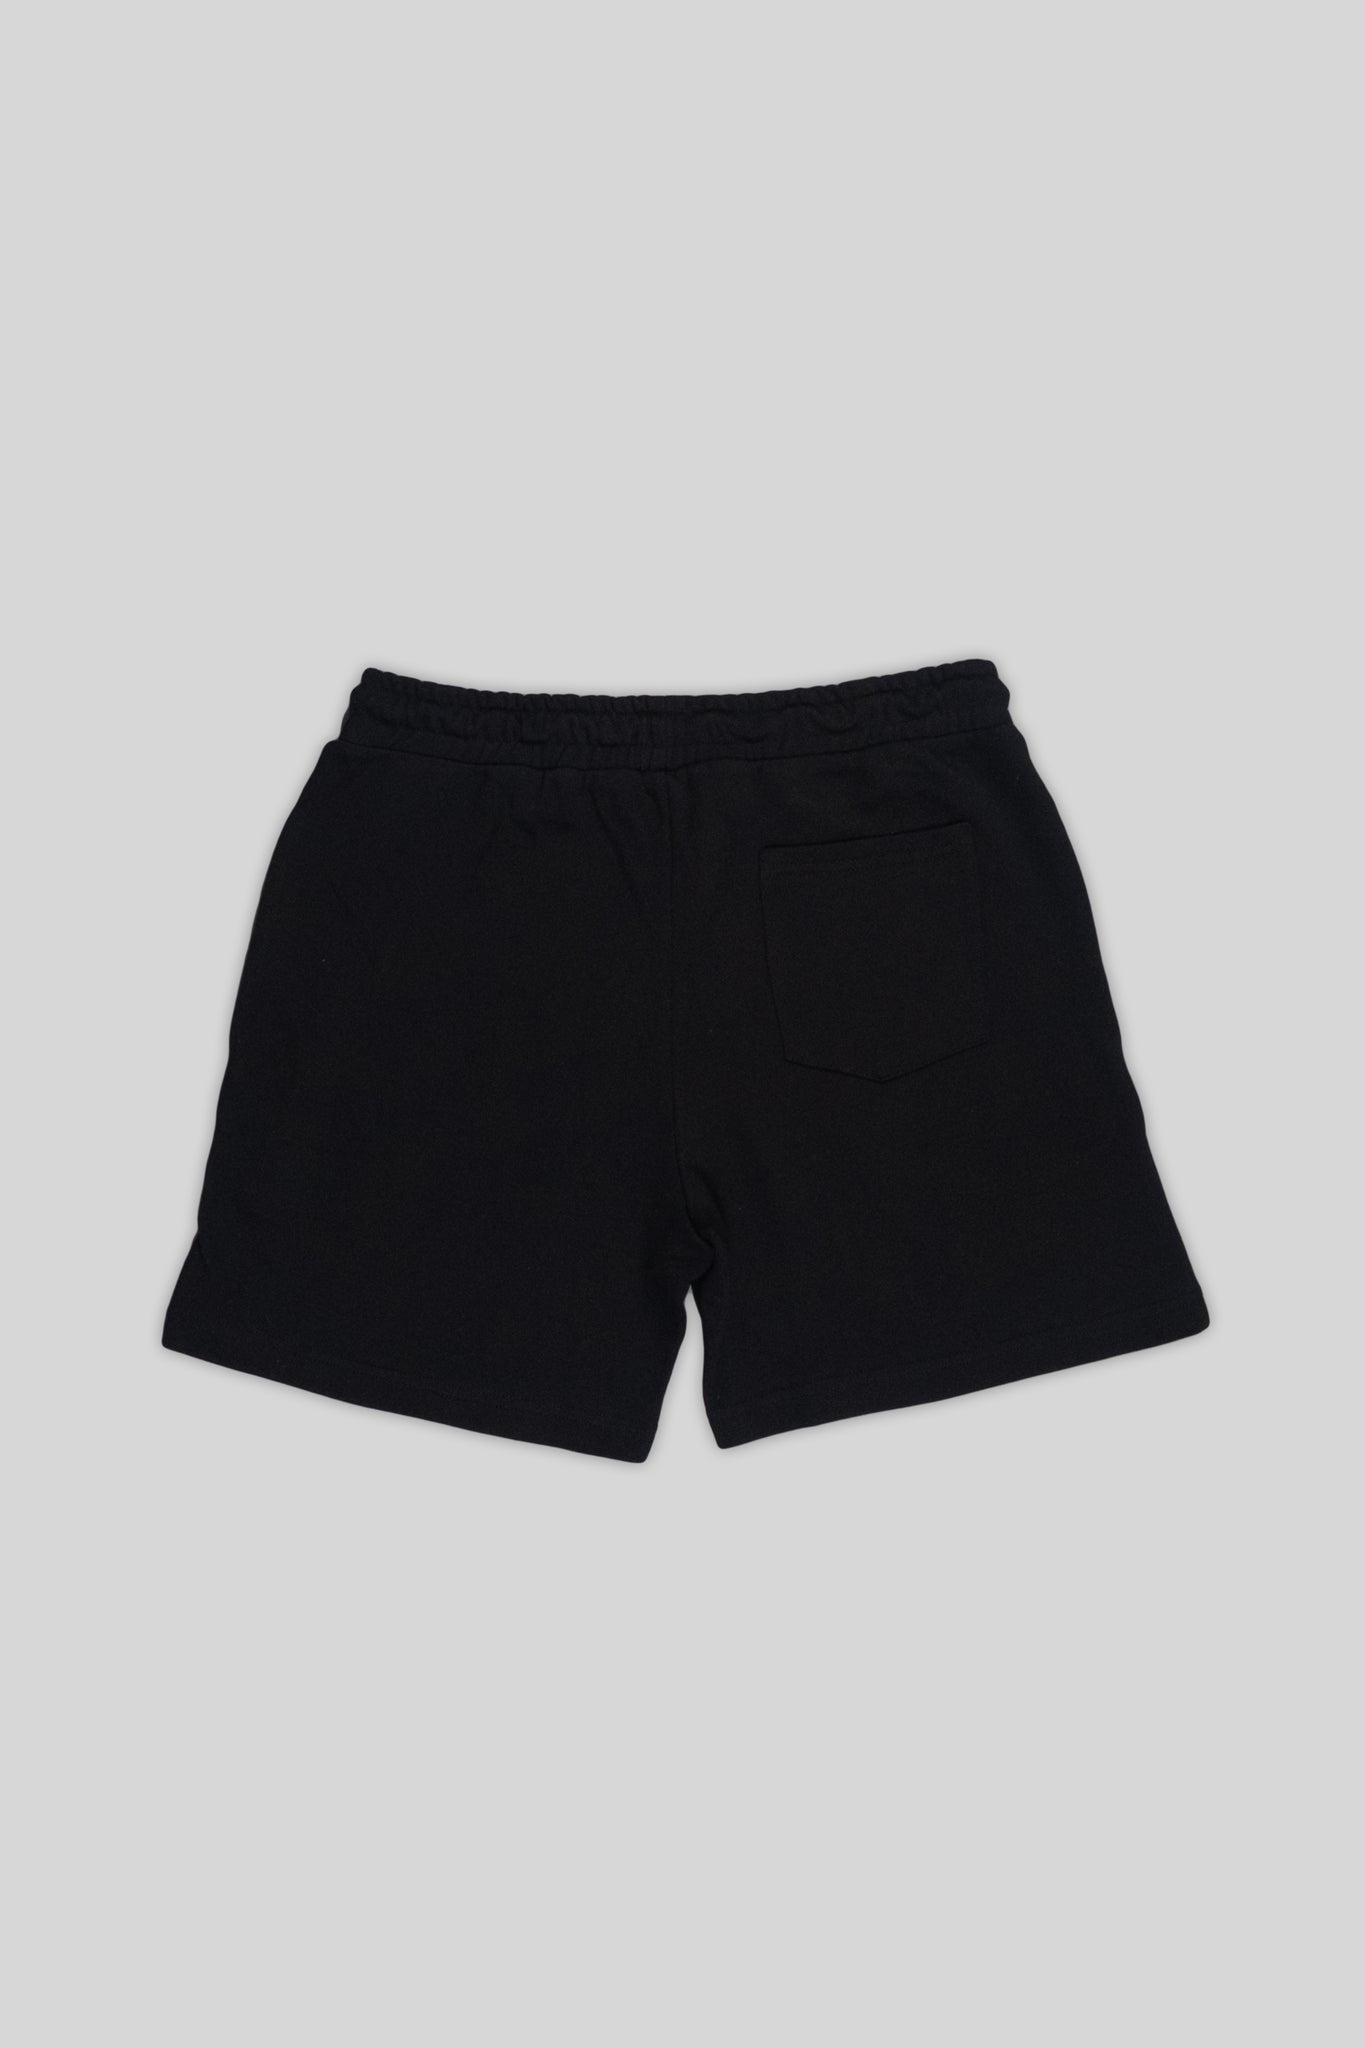 https://shopthegoon.com/cdn/shop/products/black-shorts-02_2048x2048.jpg?v=1644252096